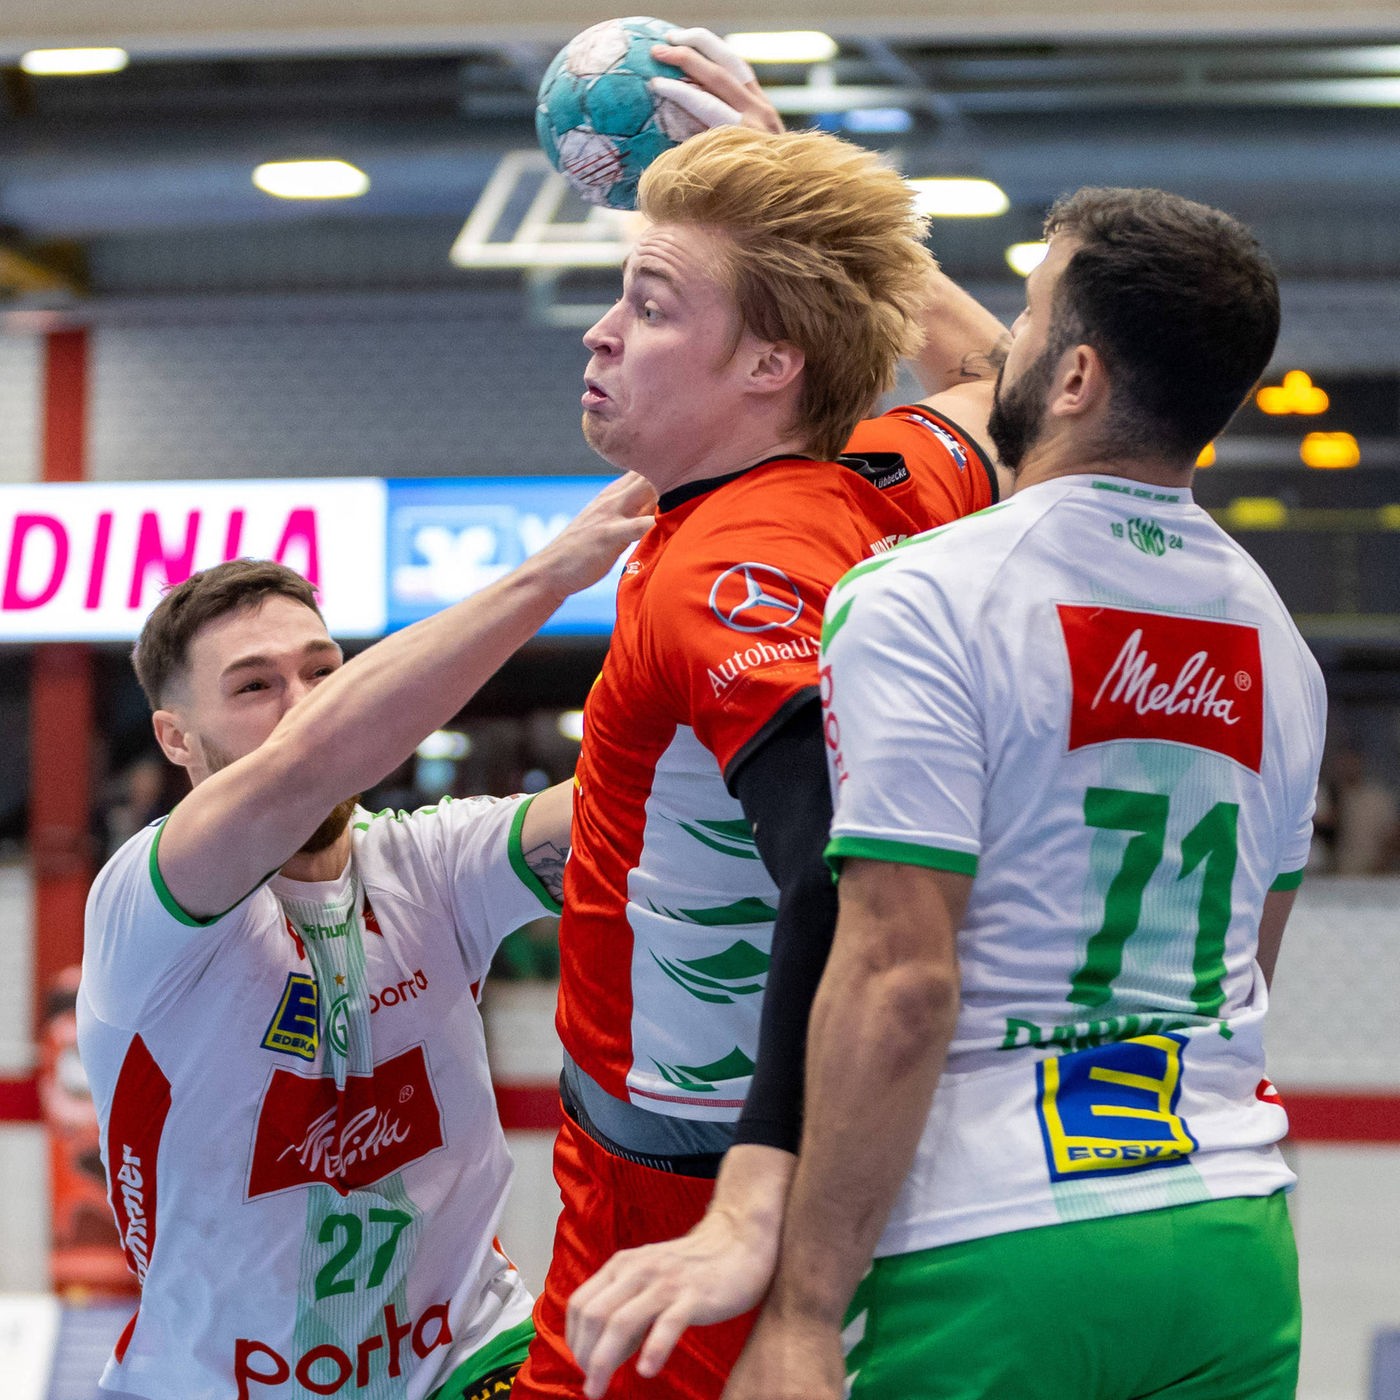 Pokal Lübbecke gewinnt Derby gegen Minden - TUSEM schlägt Drittligist - Handball - Sport